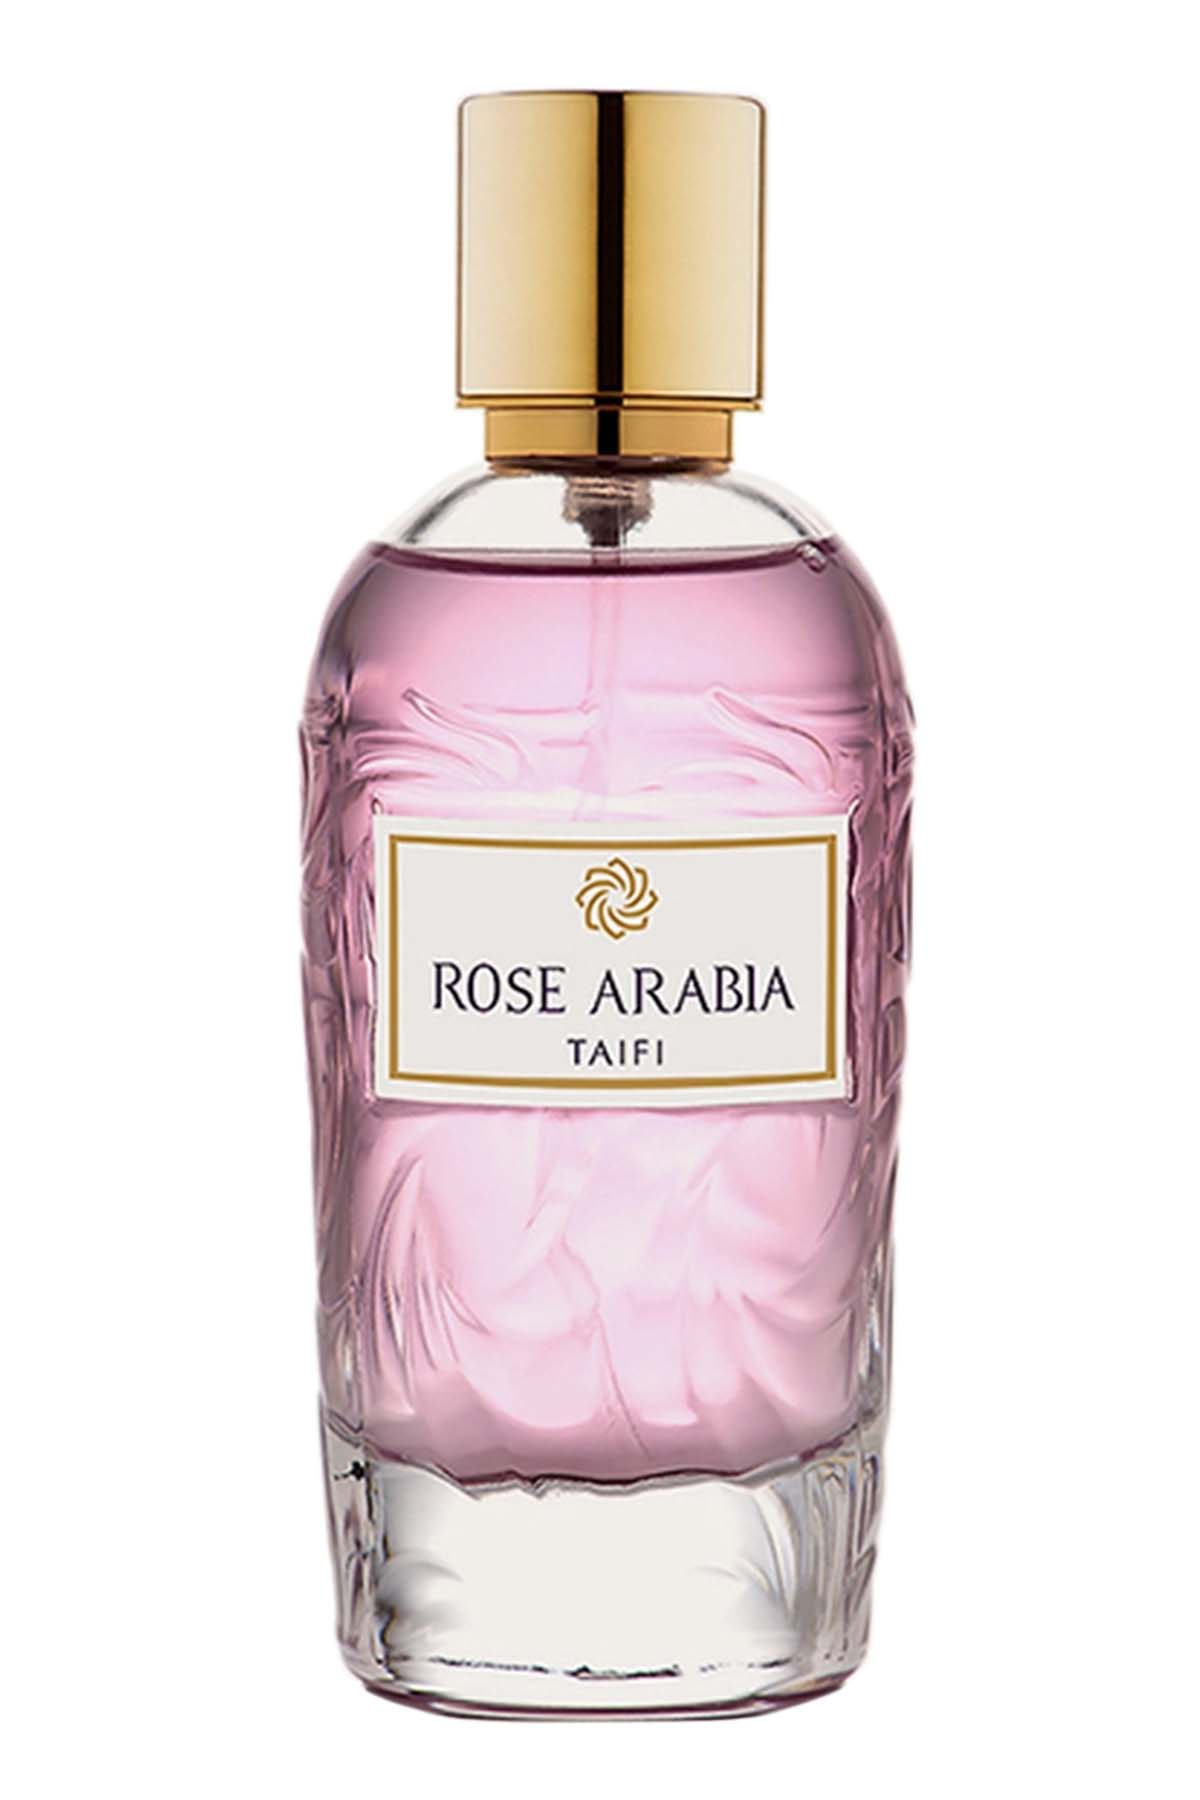 Widian Rose Arabia Taifi Eau de Parfum